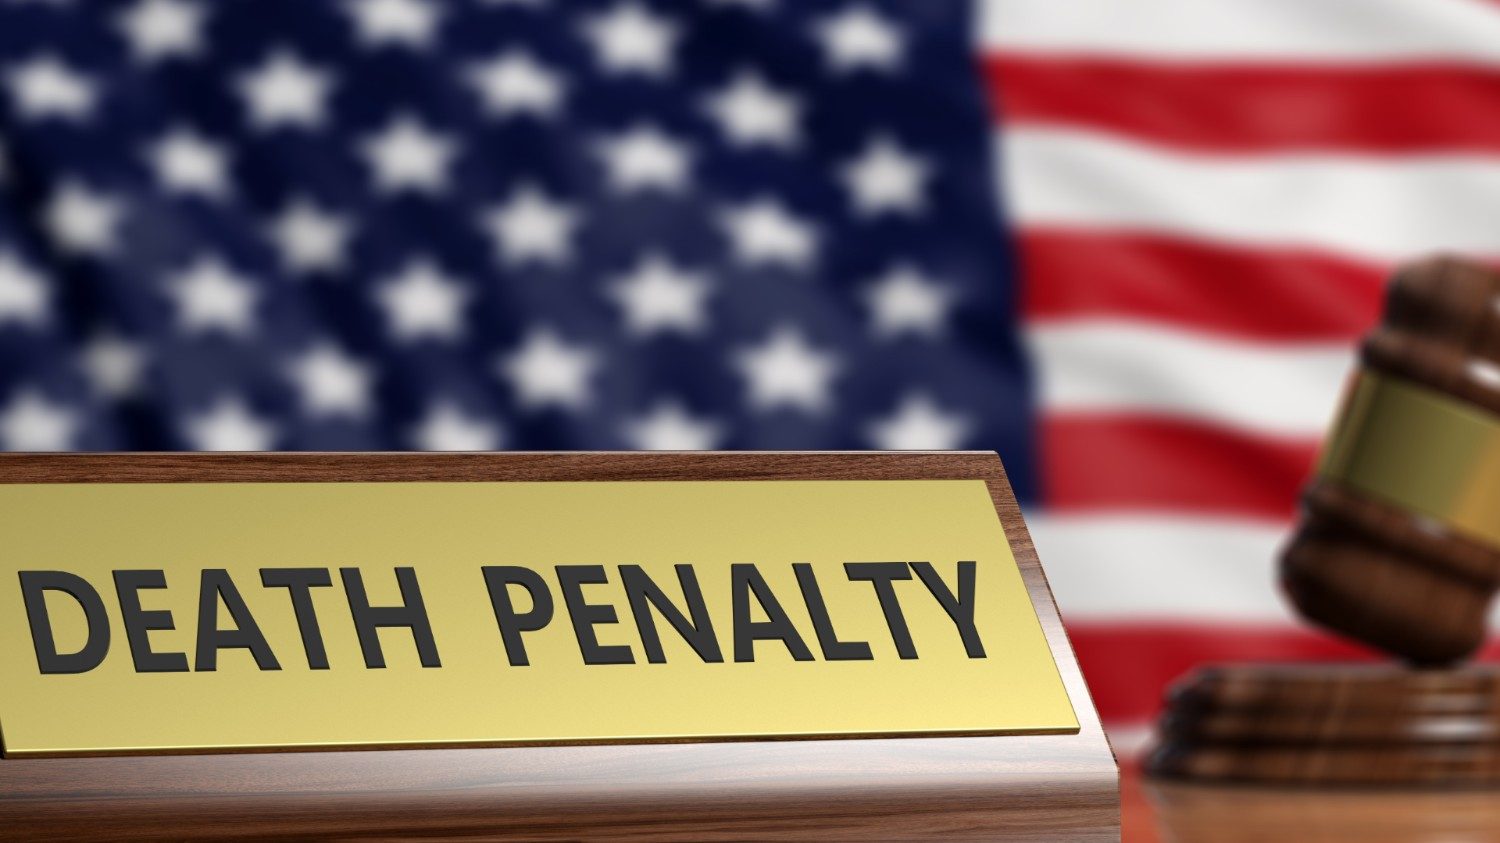 عقوبة الإعدام في امريكا - 4 حقائق رئيسية ودور الرأي العام في تطبيقها